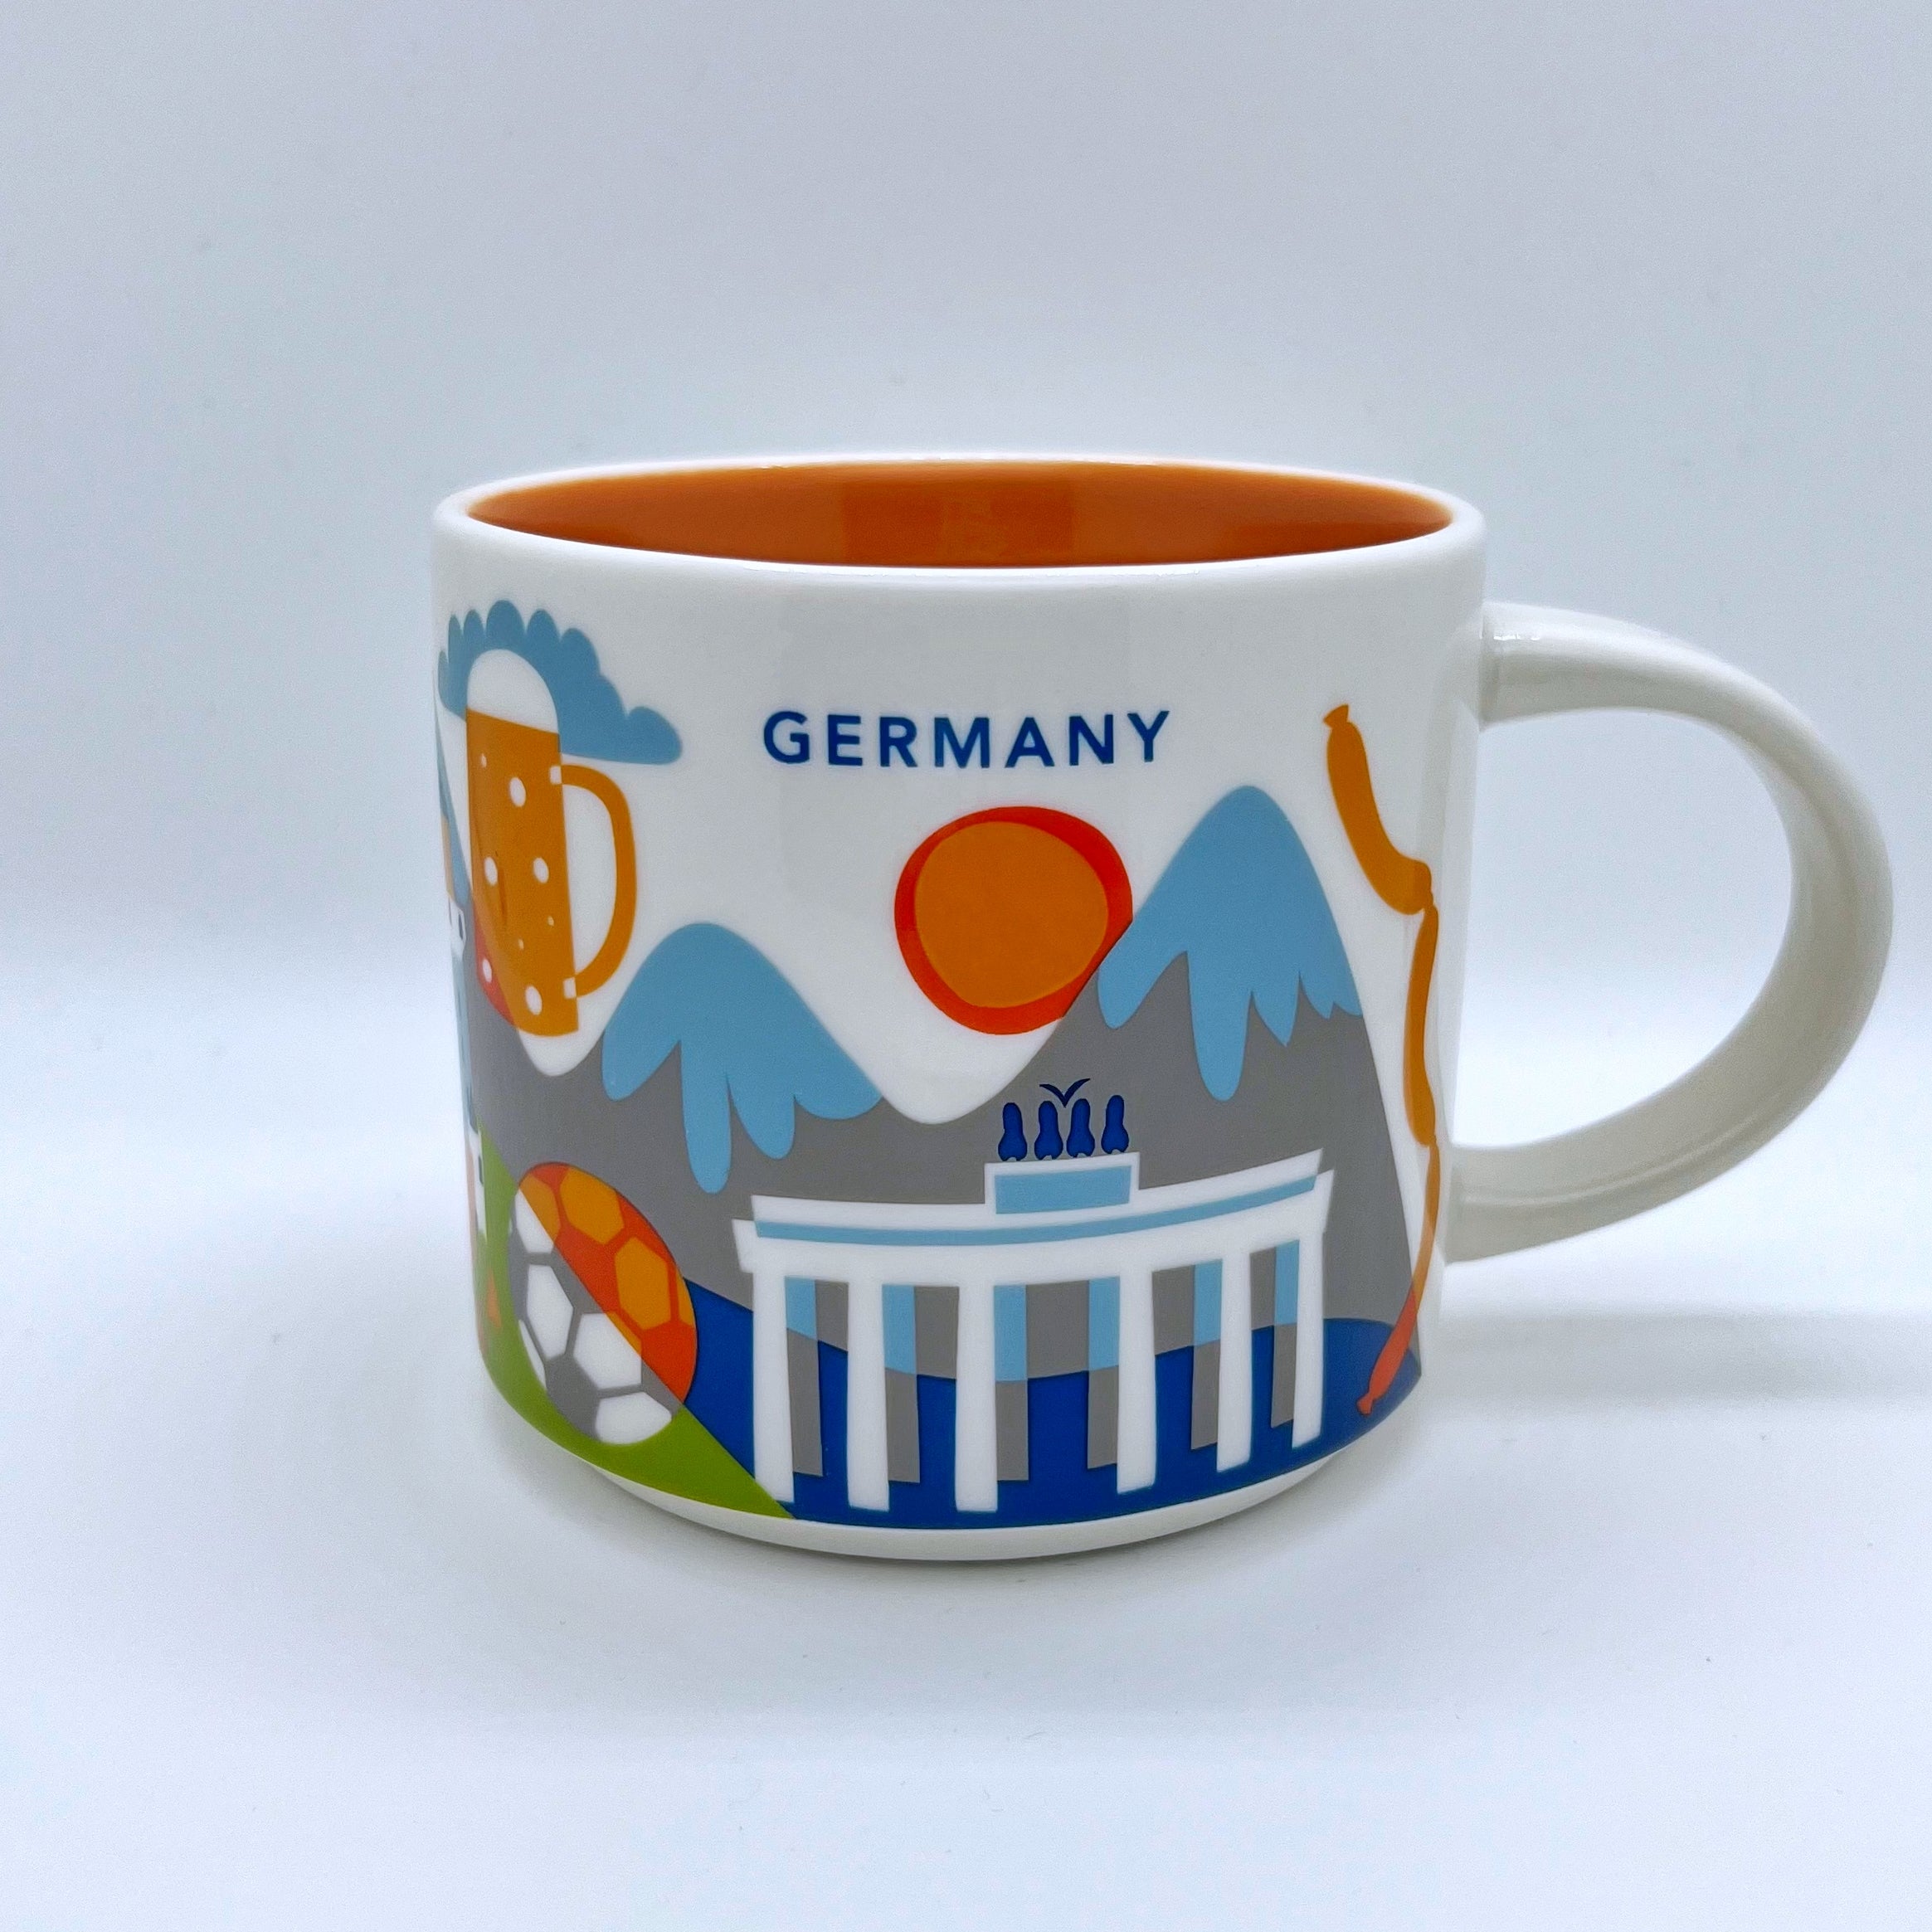 Kaffee Tee oder Cappuccino Tasse von Starbucks mit gemalten Bildern aus dem Land Deutschland